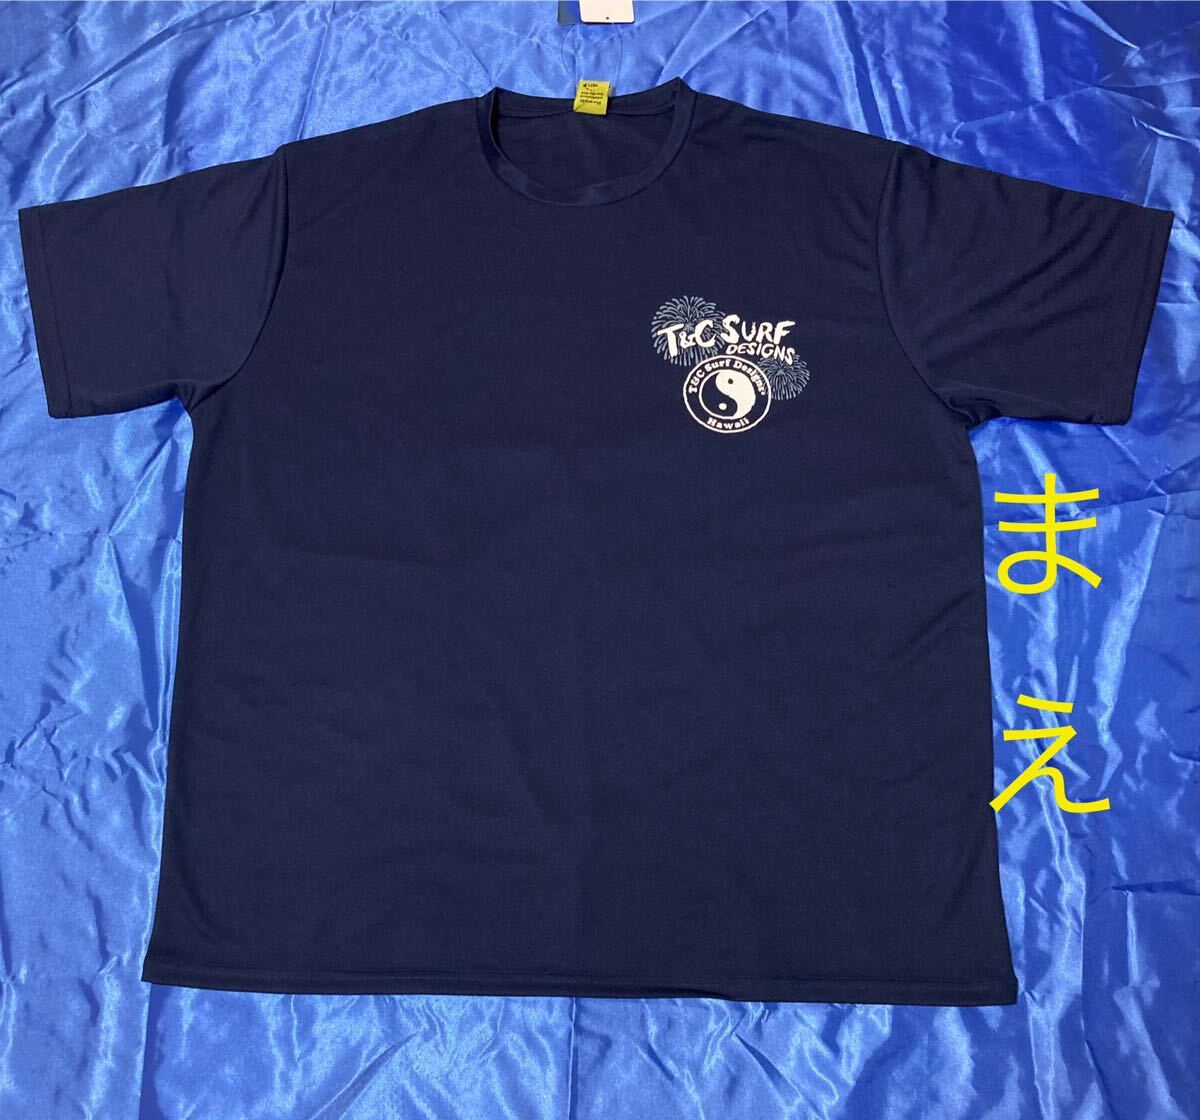 T&C surf (花火)メッシュ半袖Tシャツ メンズ大きいサイズ 5L _画像4